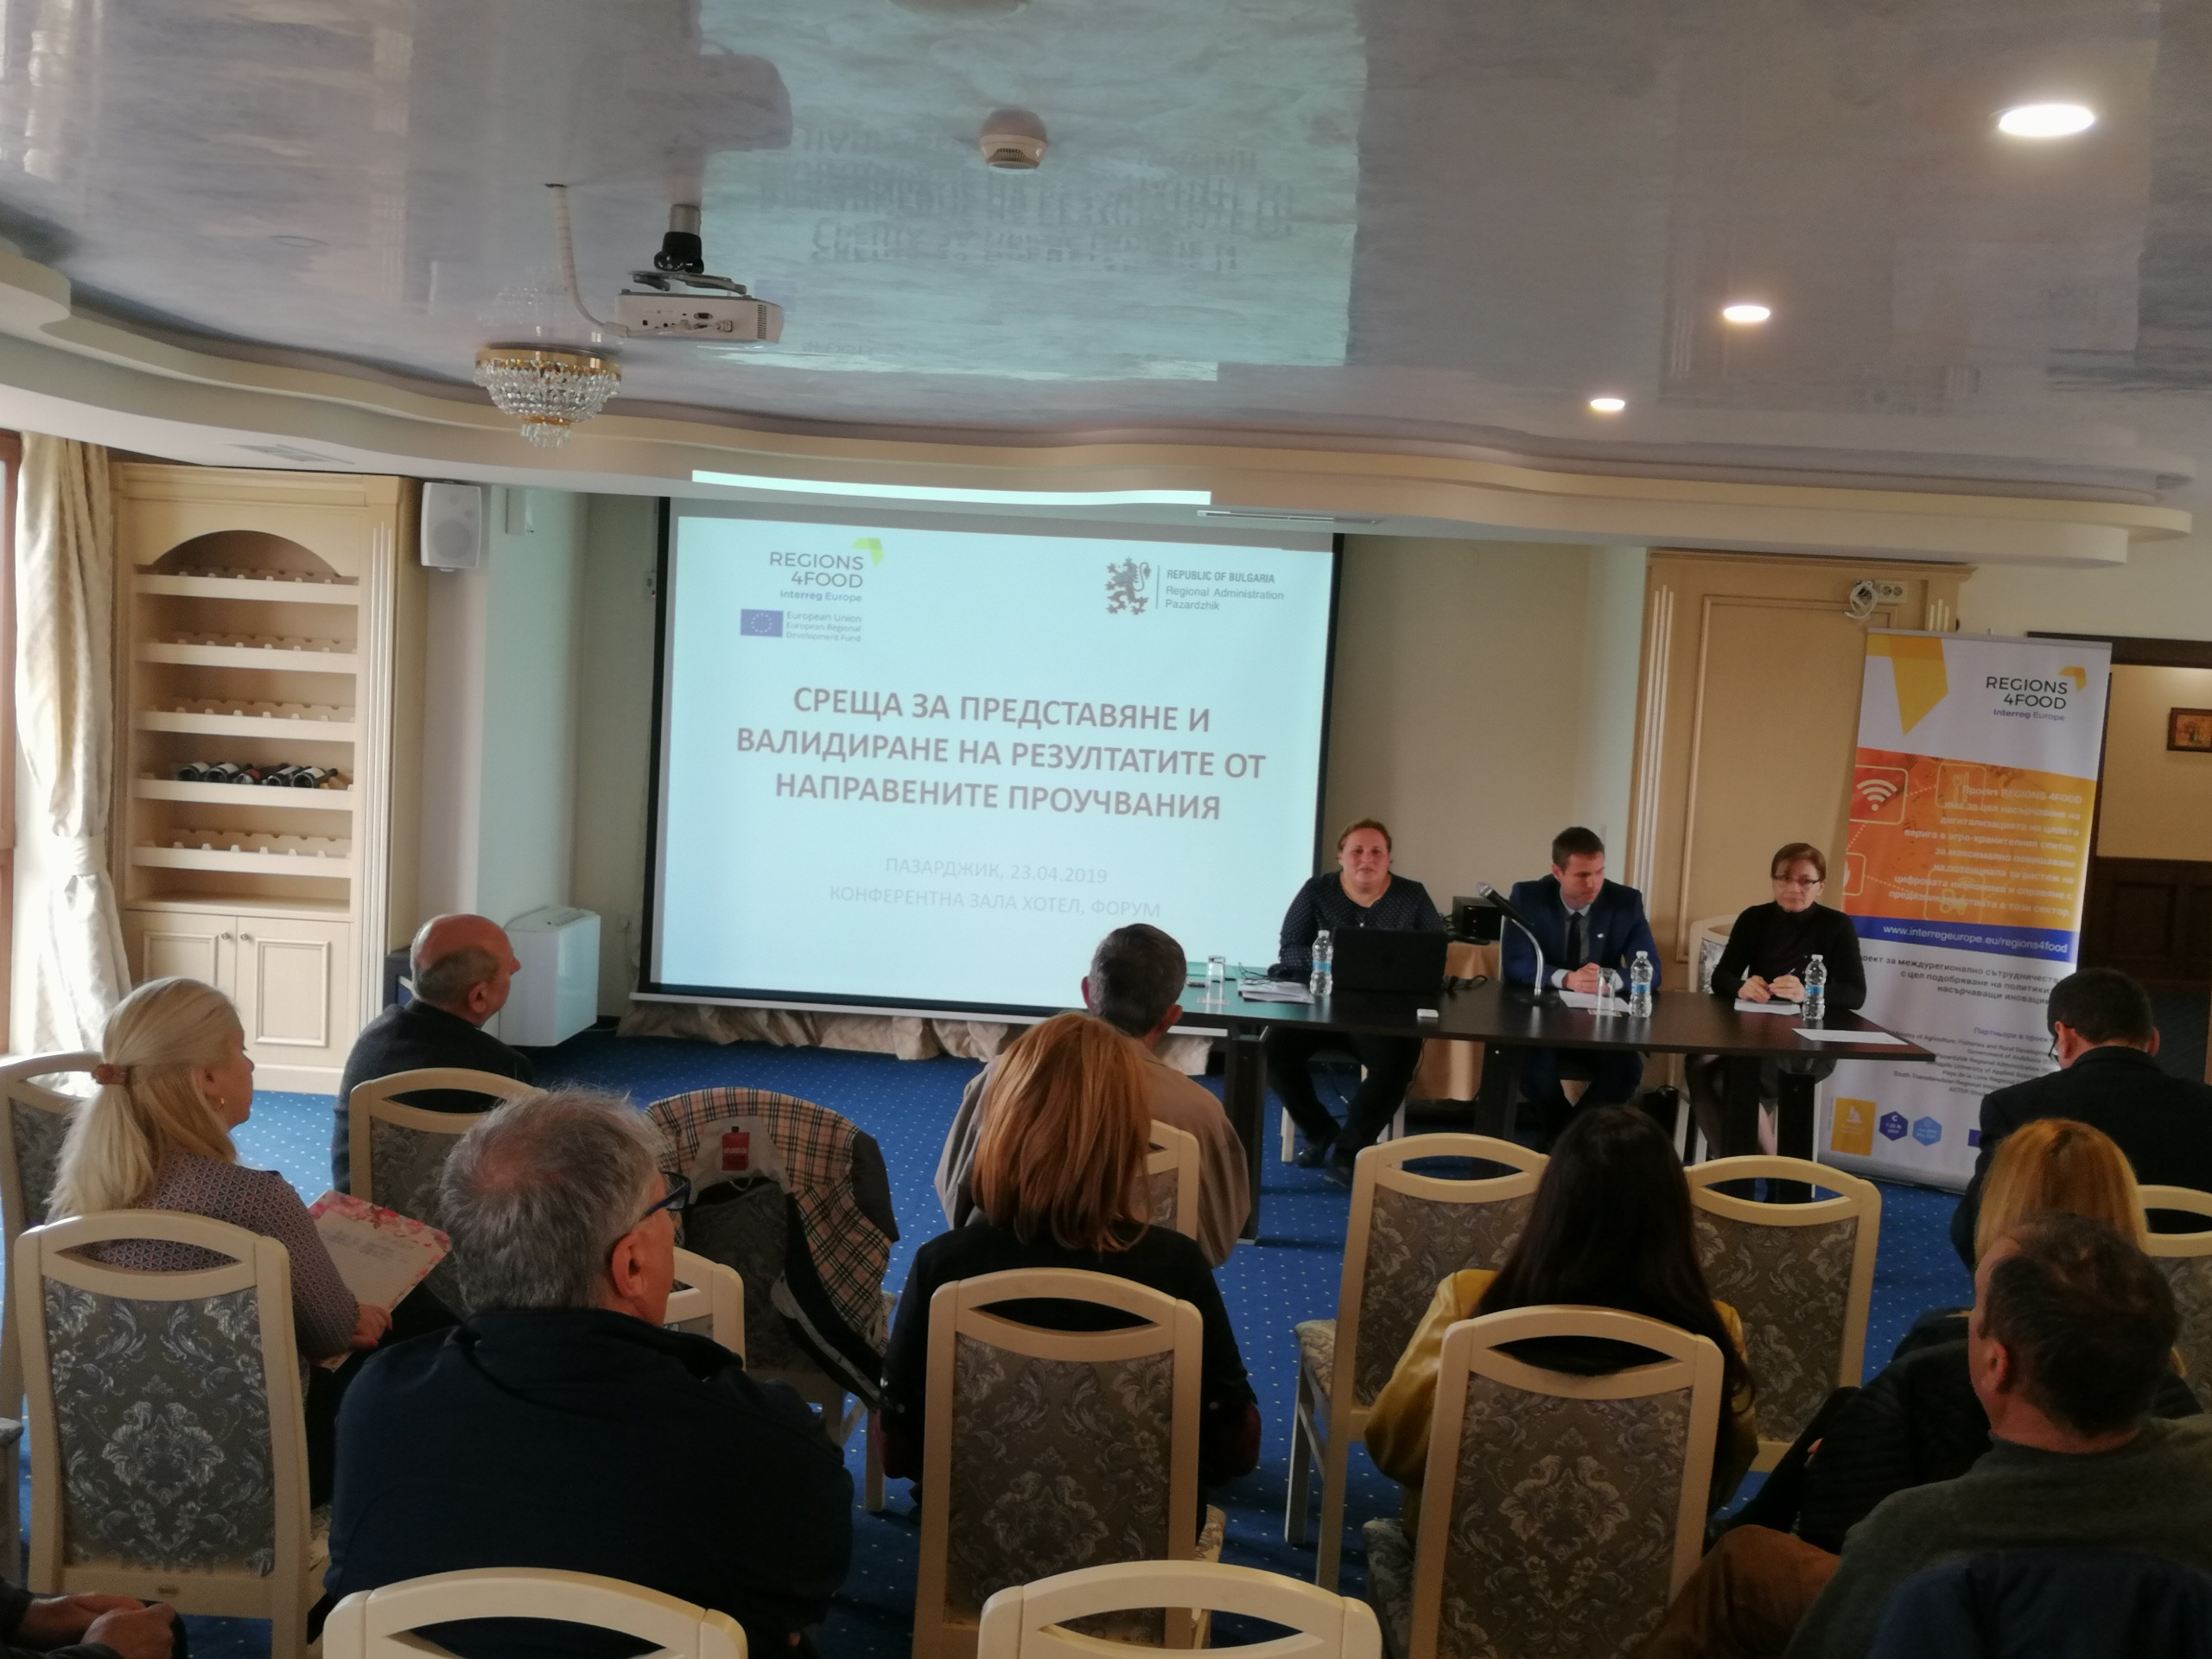 Regions4Food stakeholders met yesterday in Bulgary